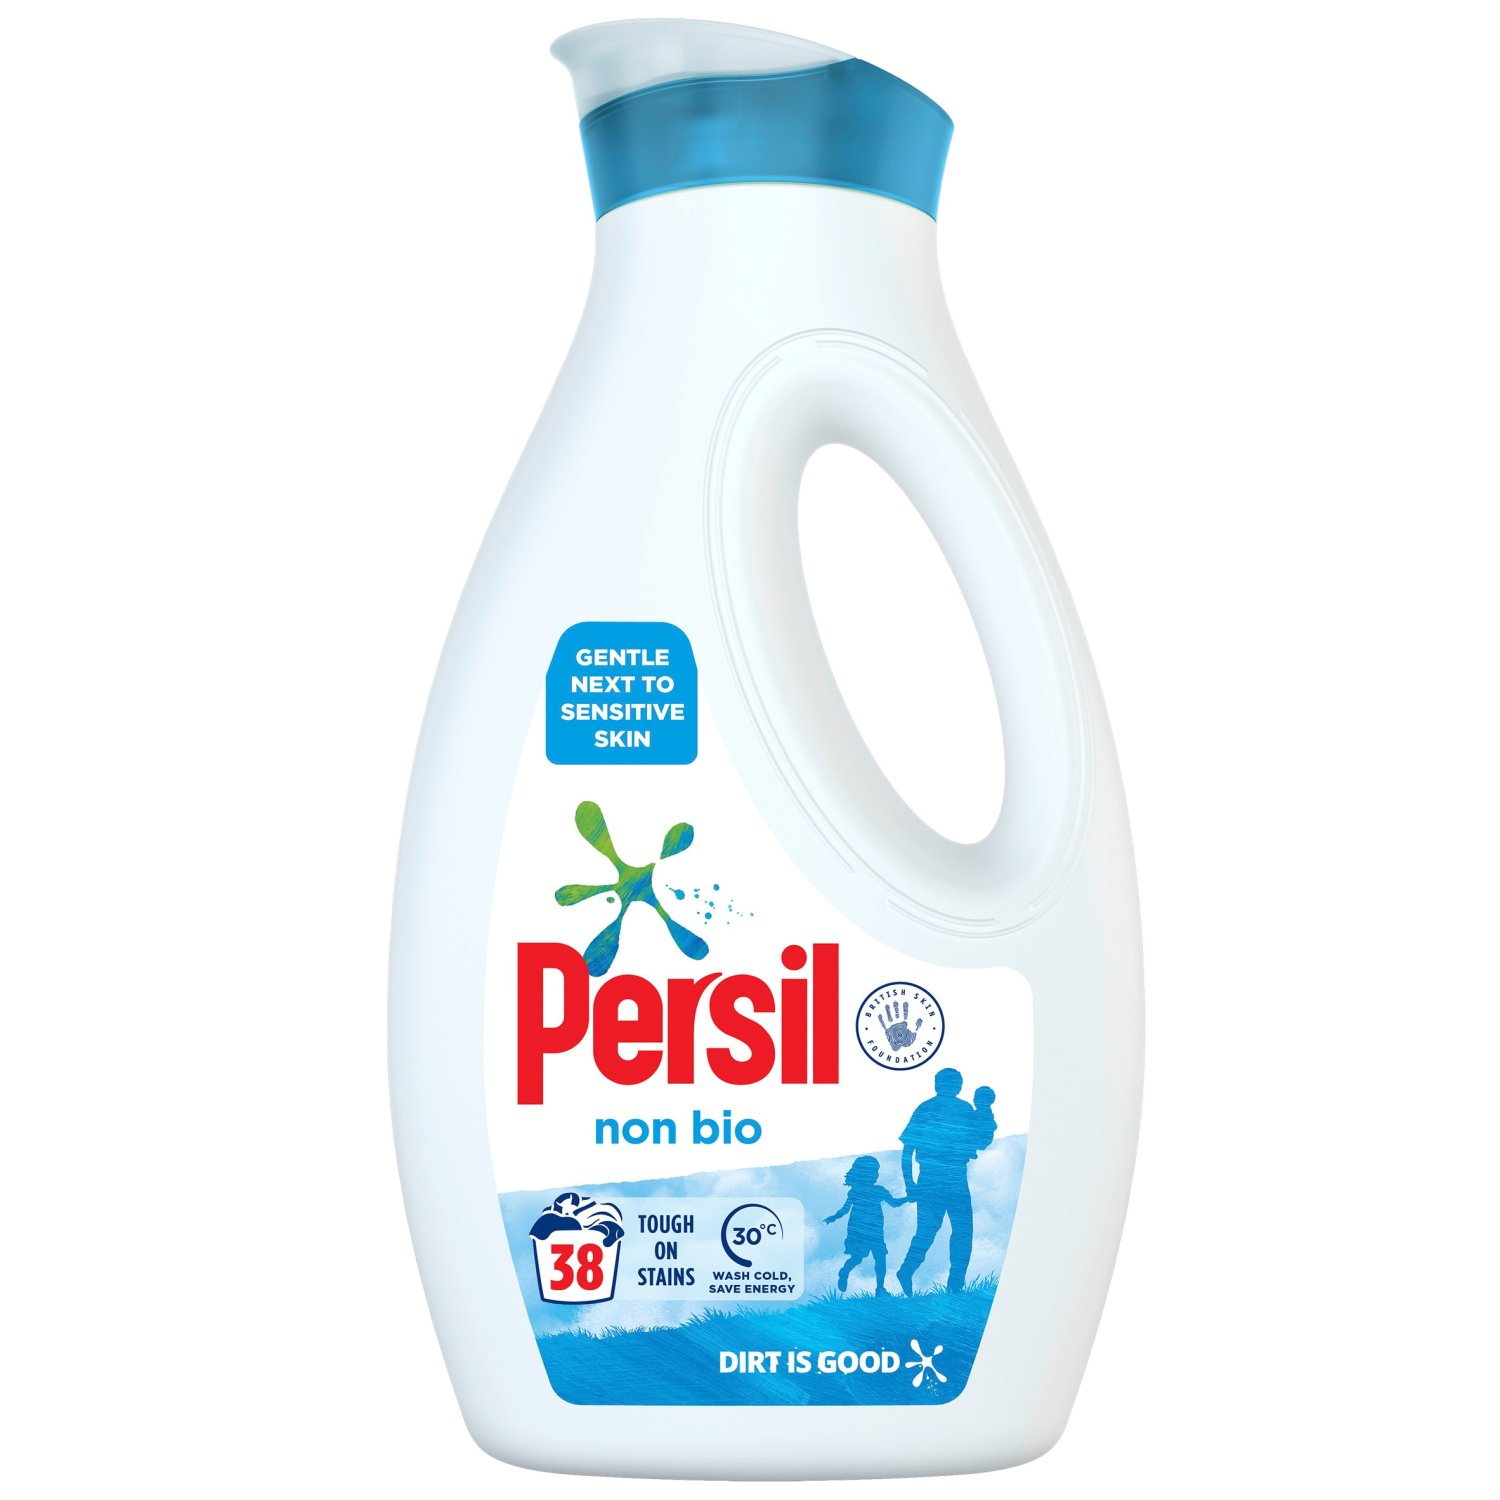 Persil Non Bio Liquid Washing Detergent 38 Washes (1.03 L)